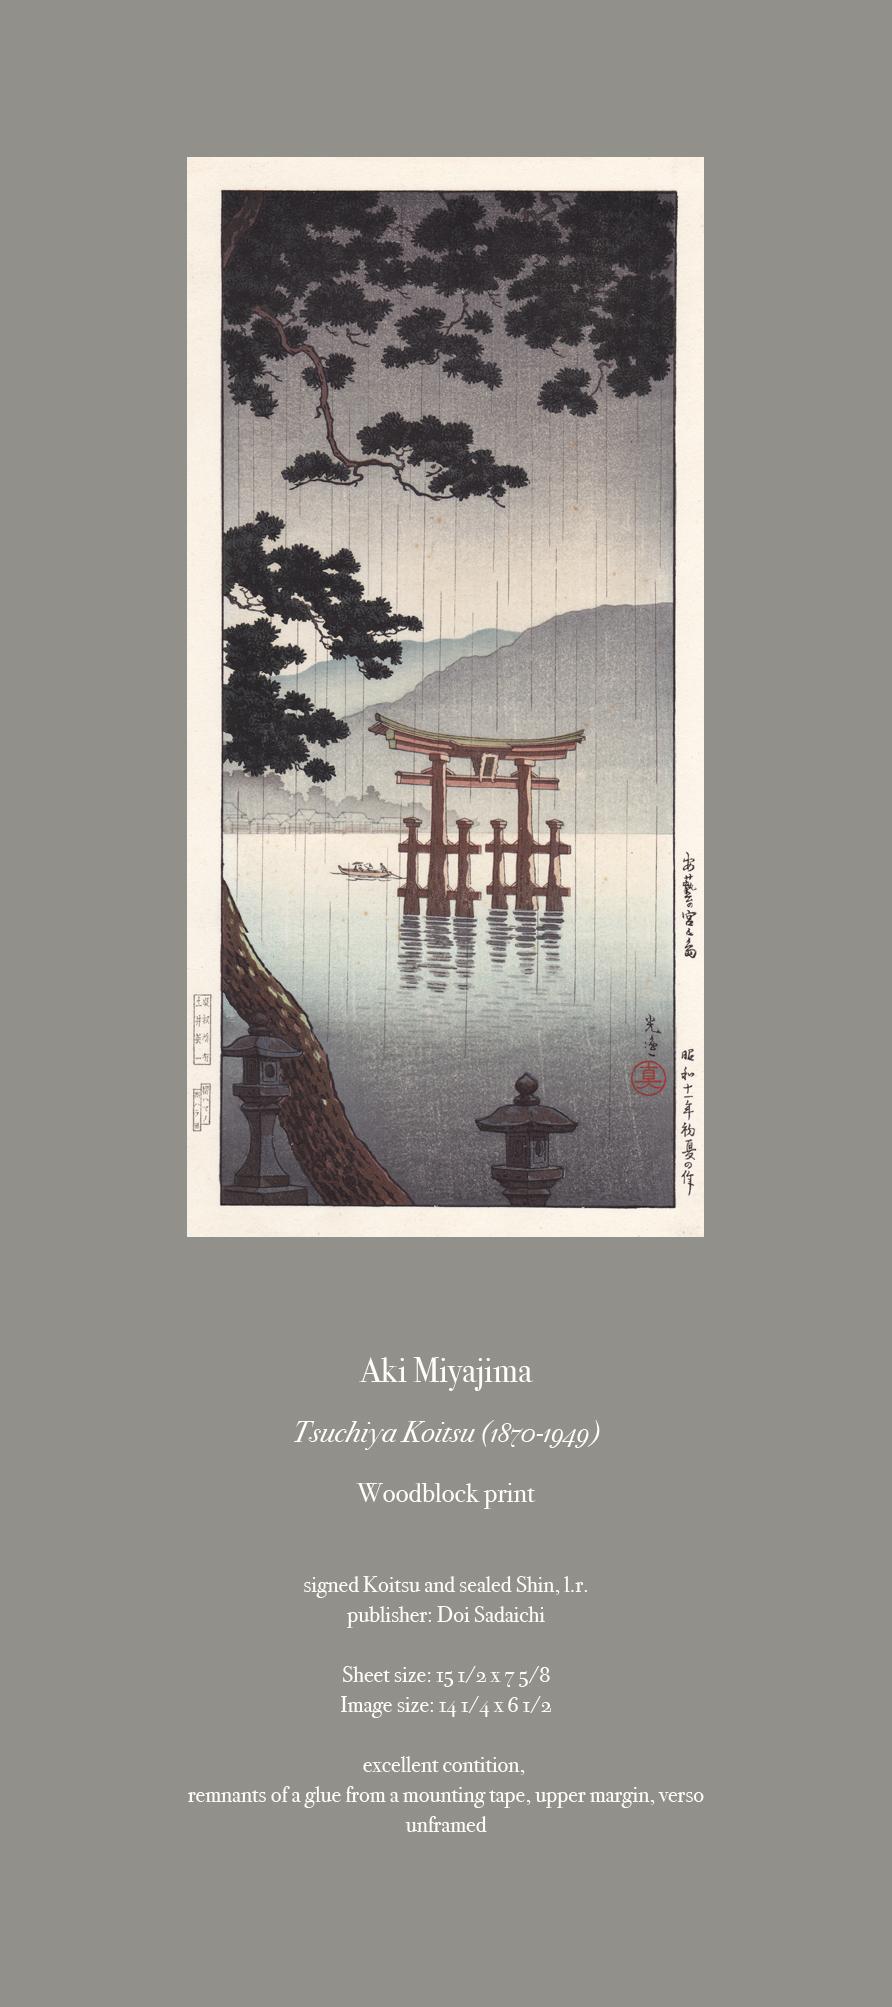 Aki Miyajima
Tsuchiya Koitsu, (1870-1949)
Woodblock print.

Signed Koitsu and sealed Shin, l.r.
Publisher: Doi Sadaichi

Sheet size: 15 1/2